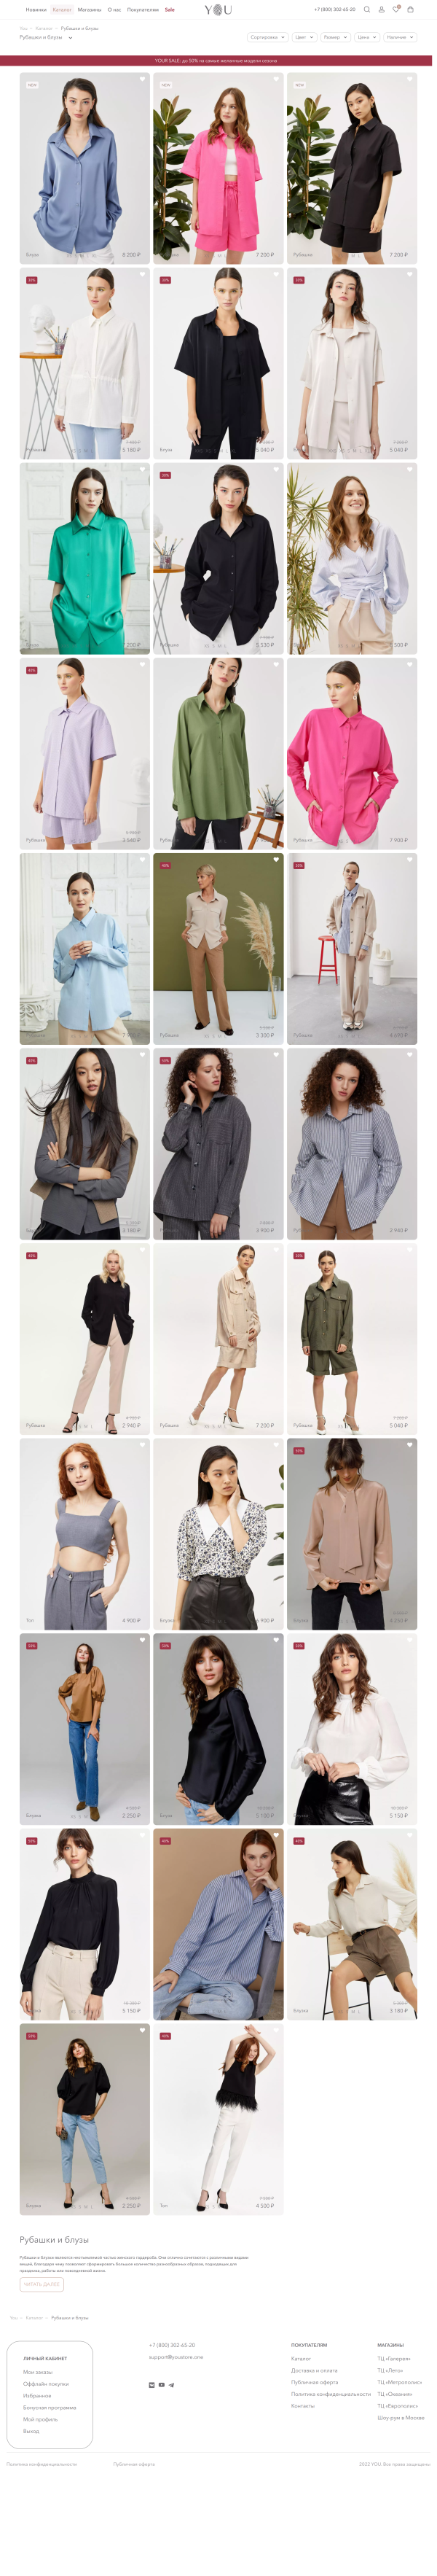 Versión regular del sitio La tienda de la ropa femenina YOU . Versión 2020.